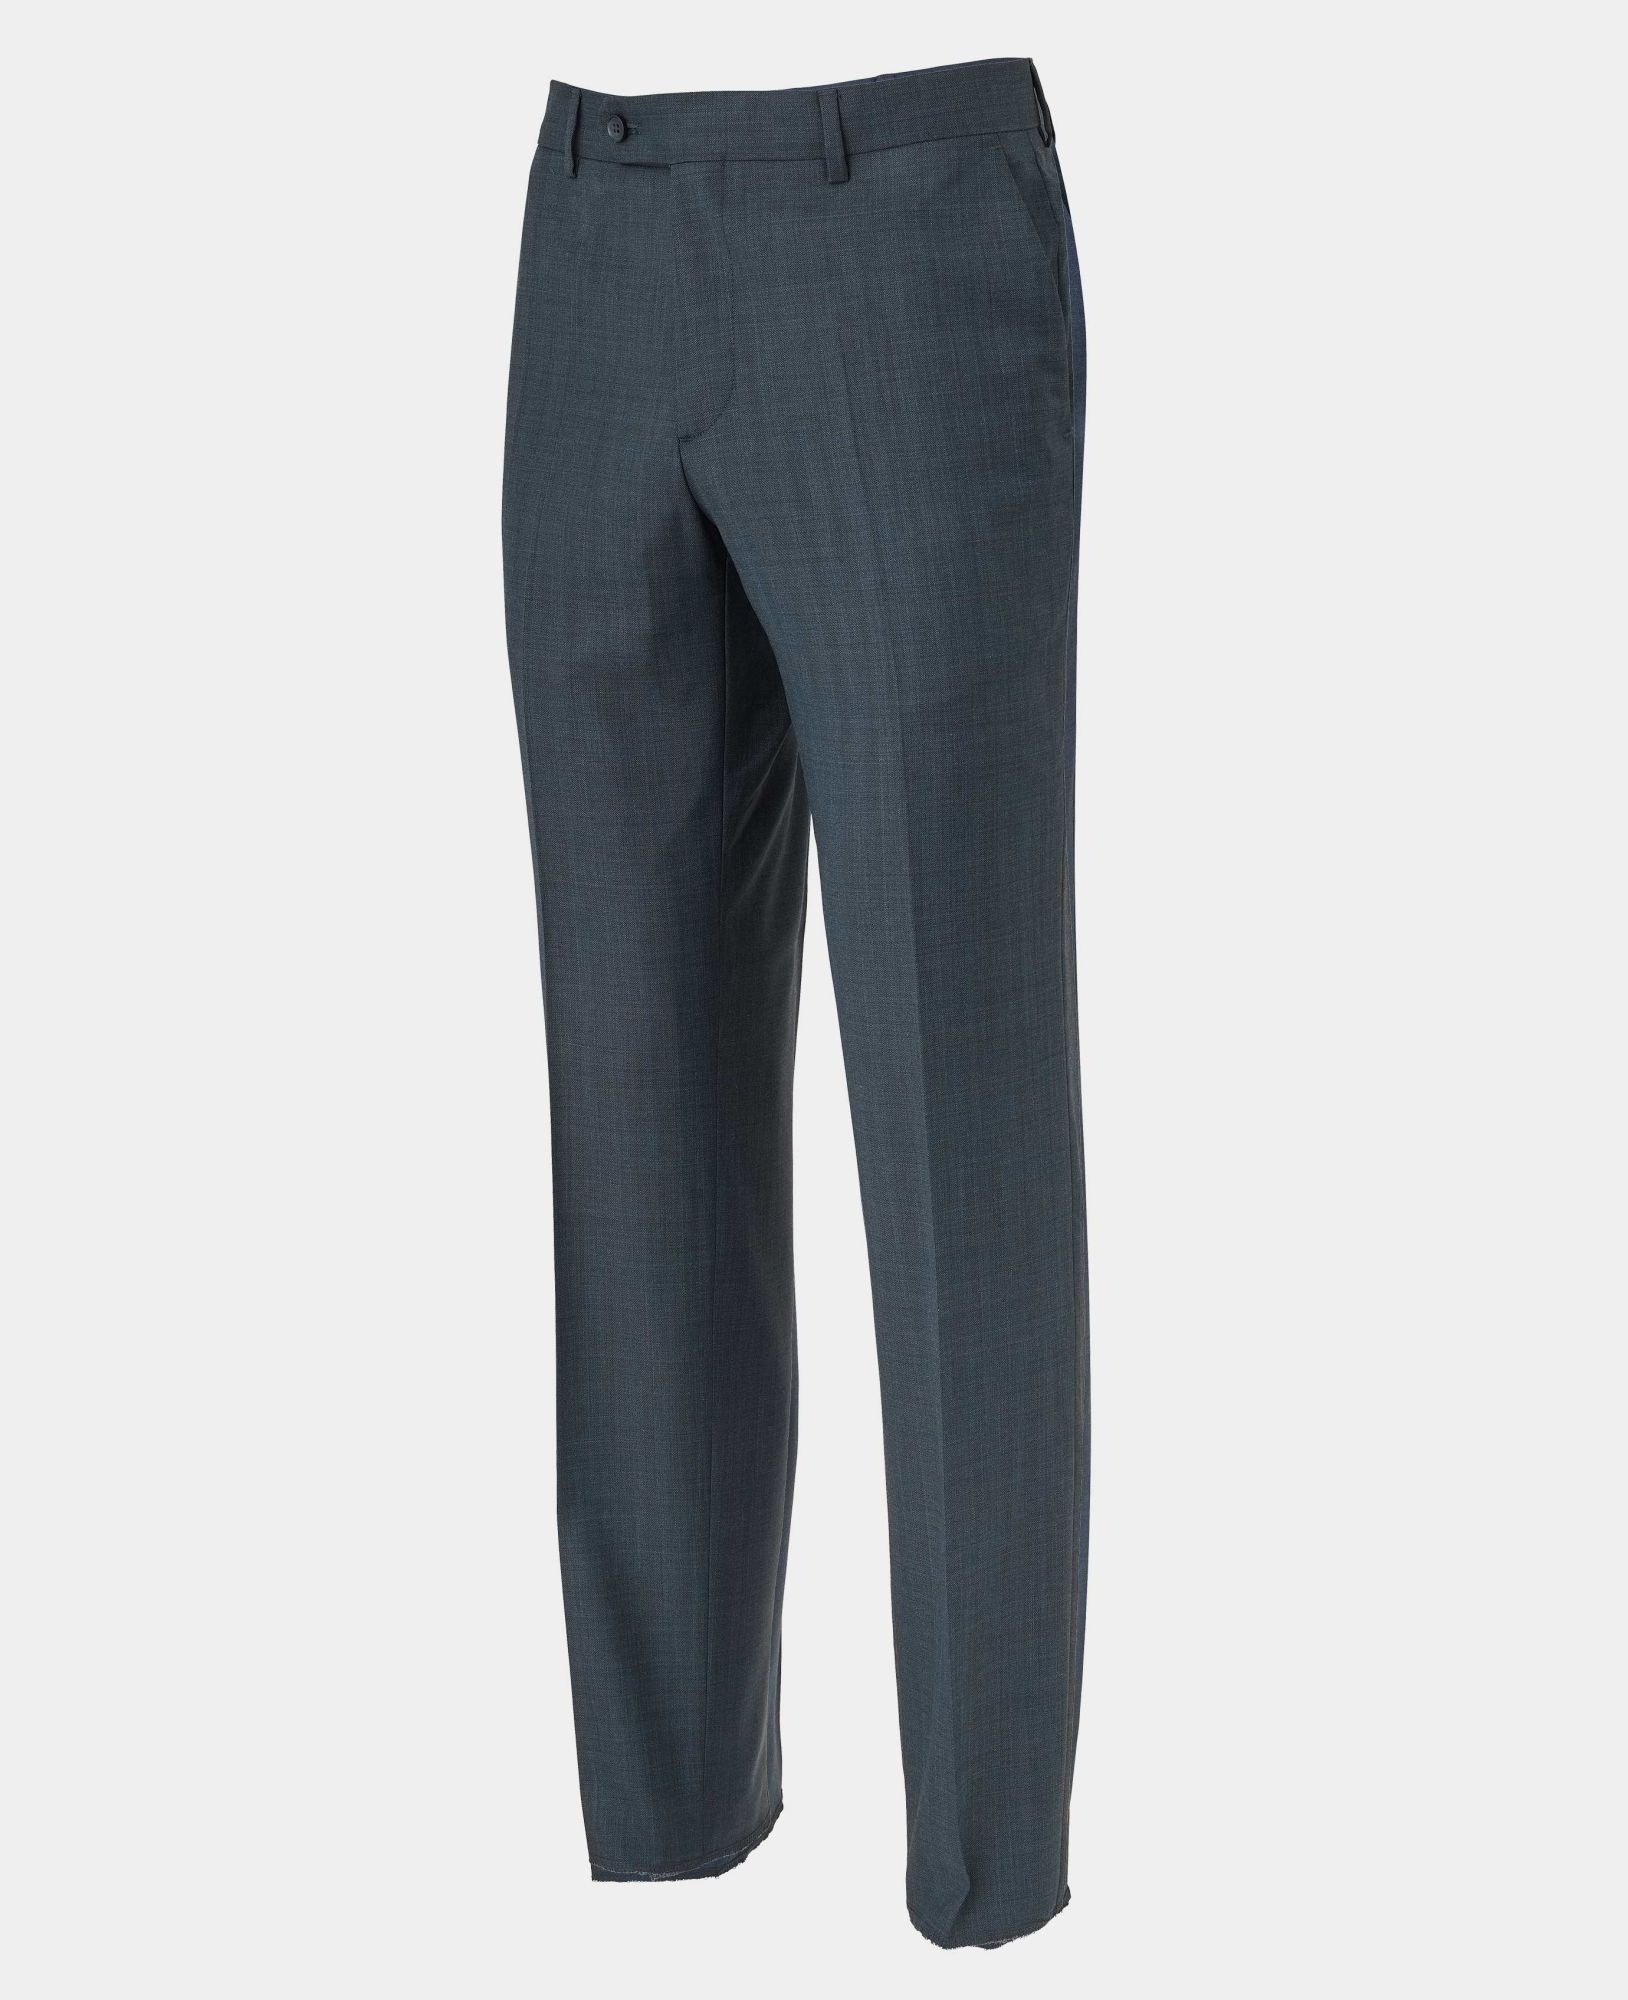 Navy Herringbone Wool-Blend Suit Trousers 38